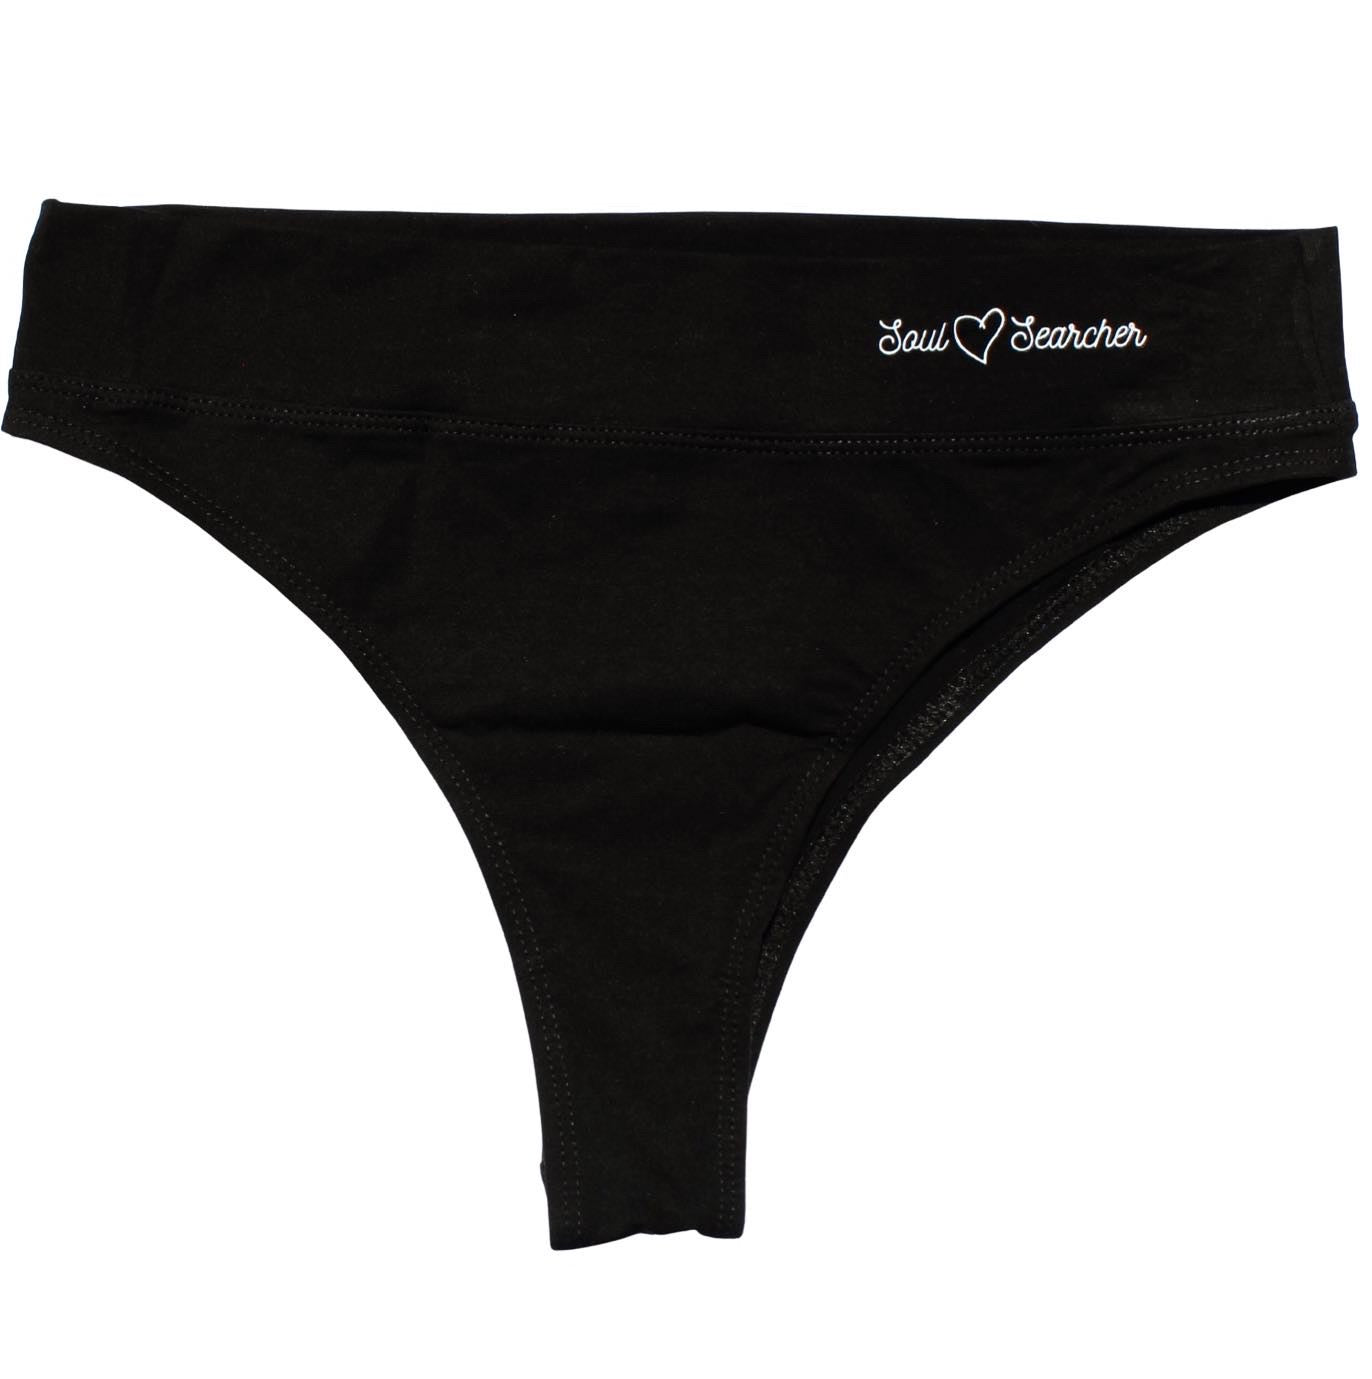 From 25,00 Euro Slip Panty Underpants Underwear for Women in Size